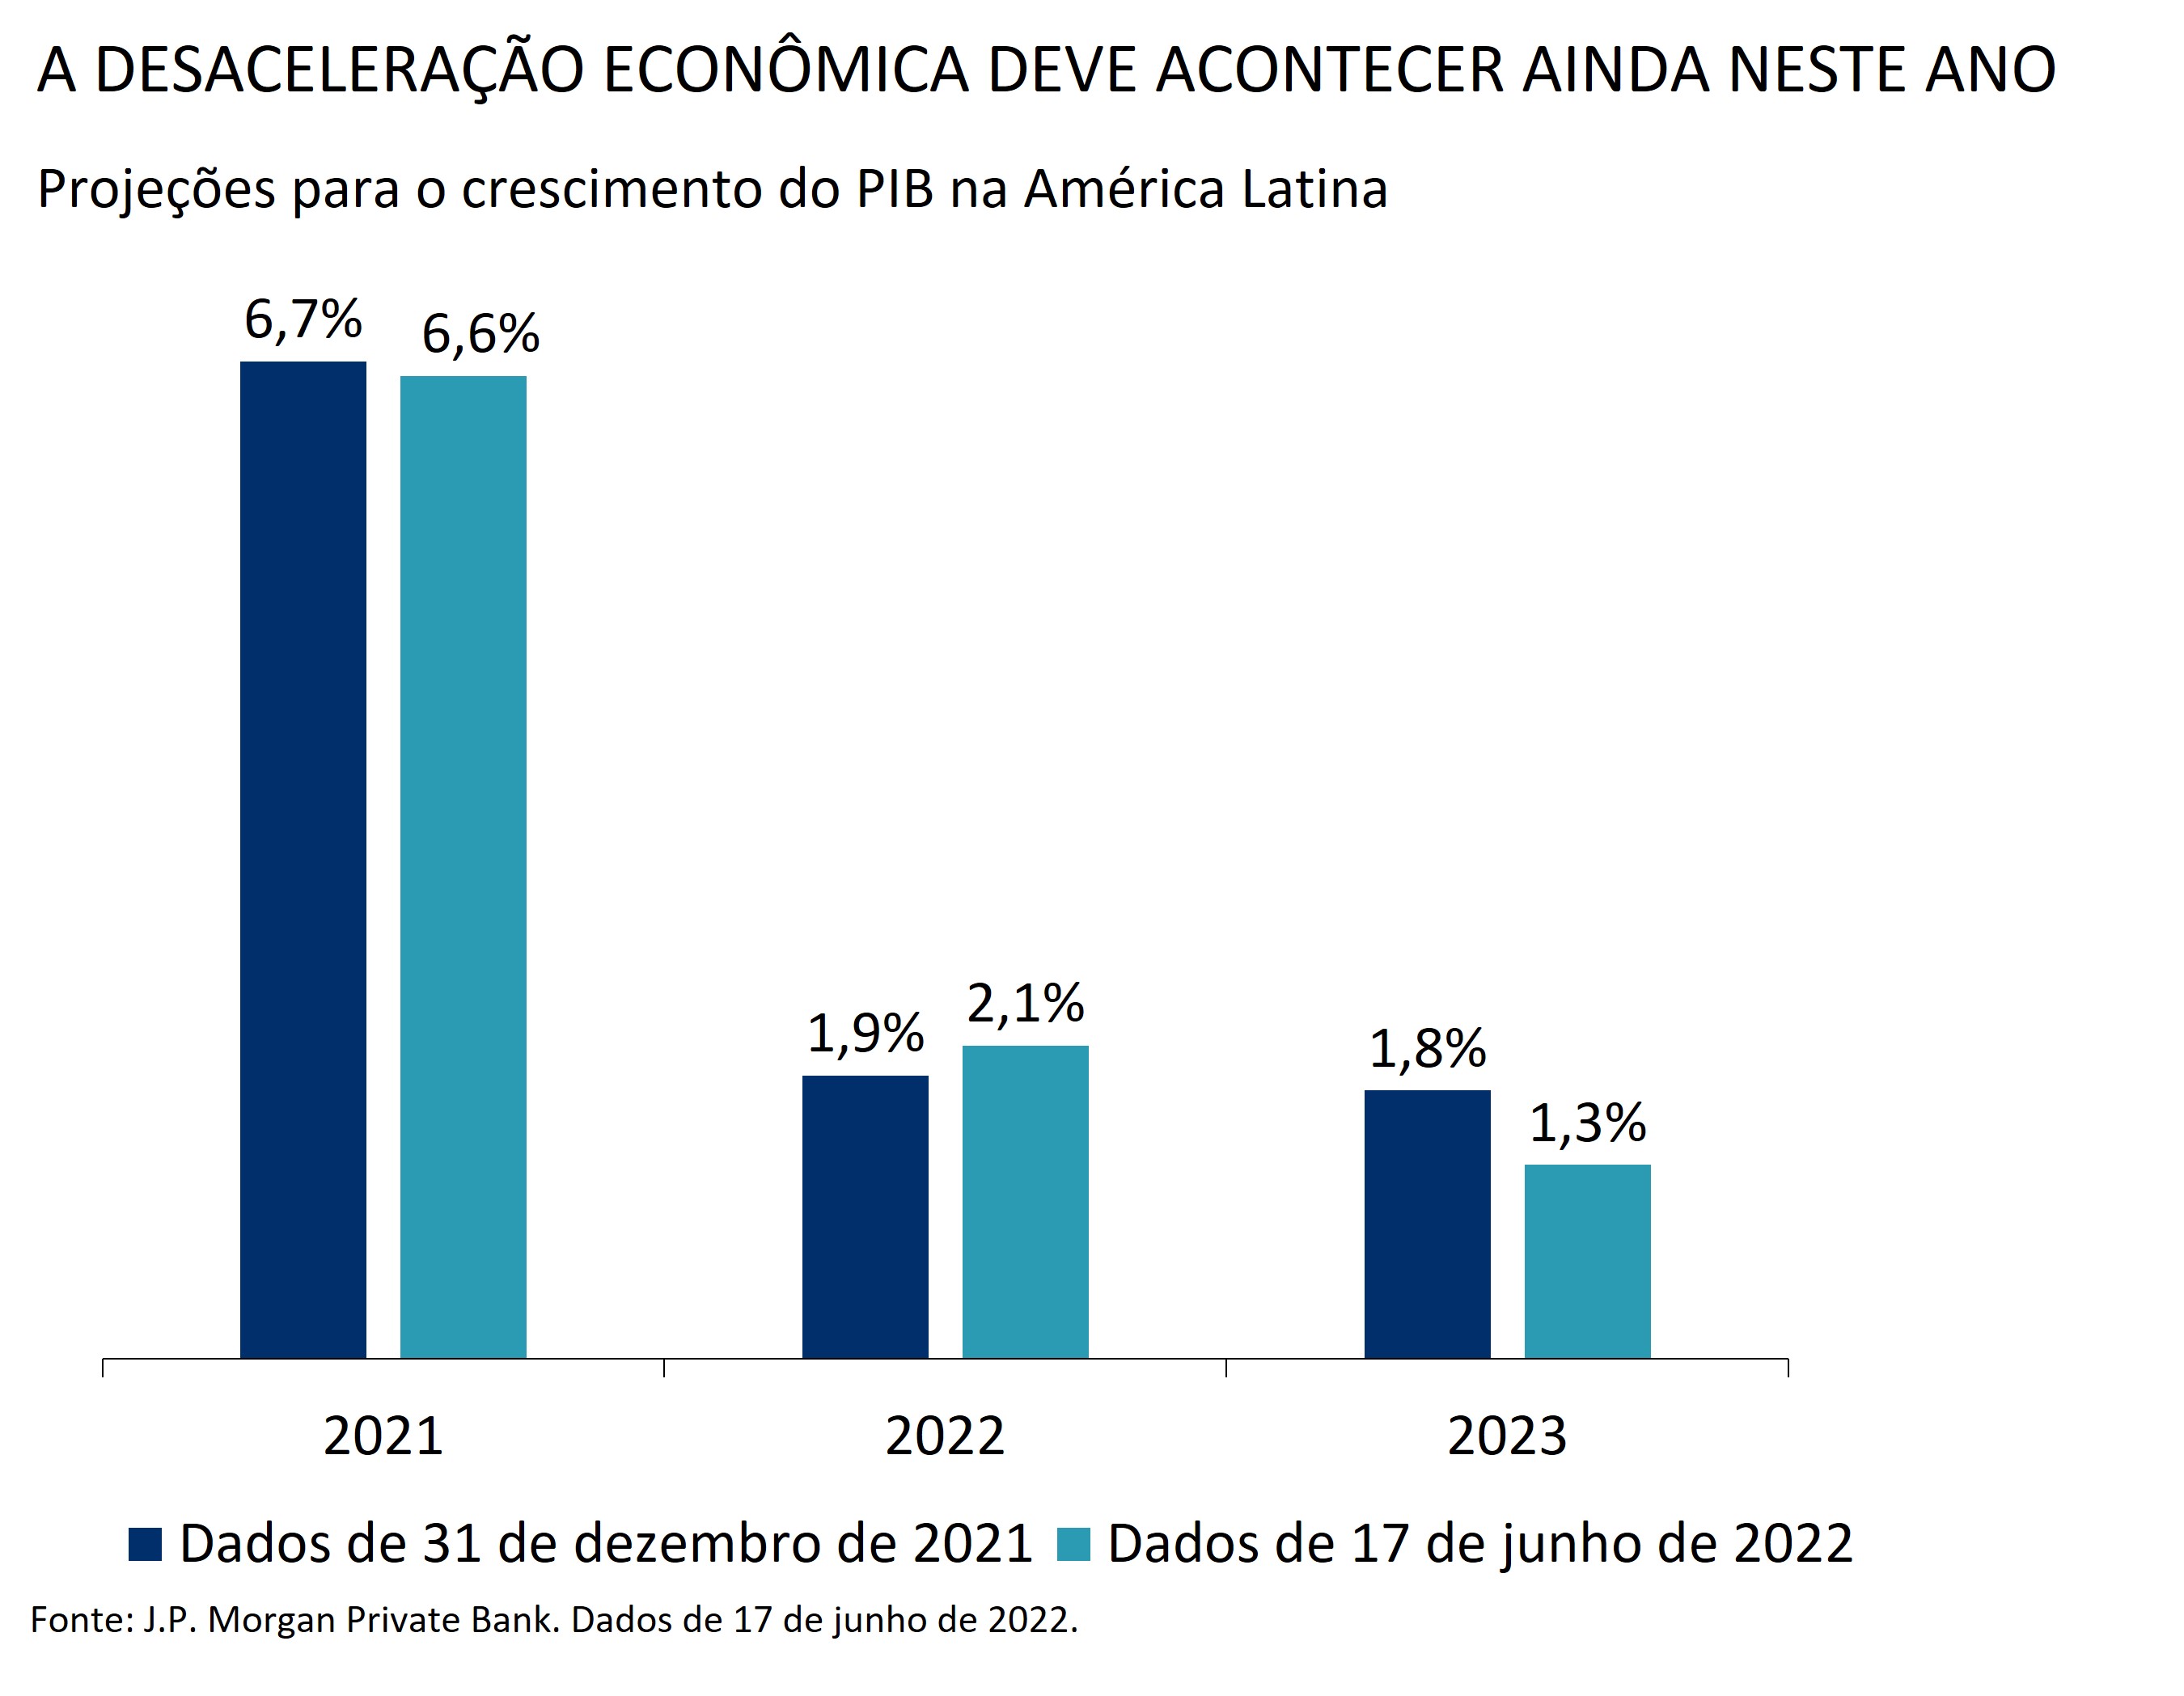  Projeções para o crescimento do PIB naAmérica Latina